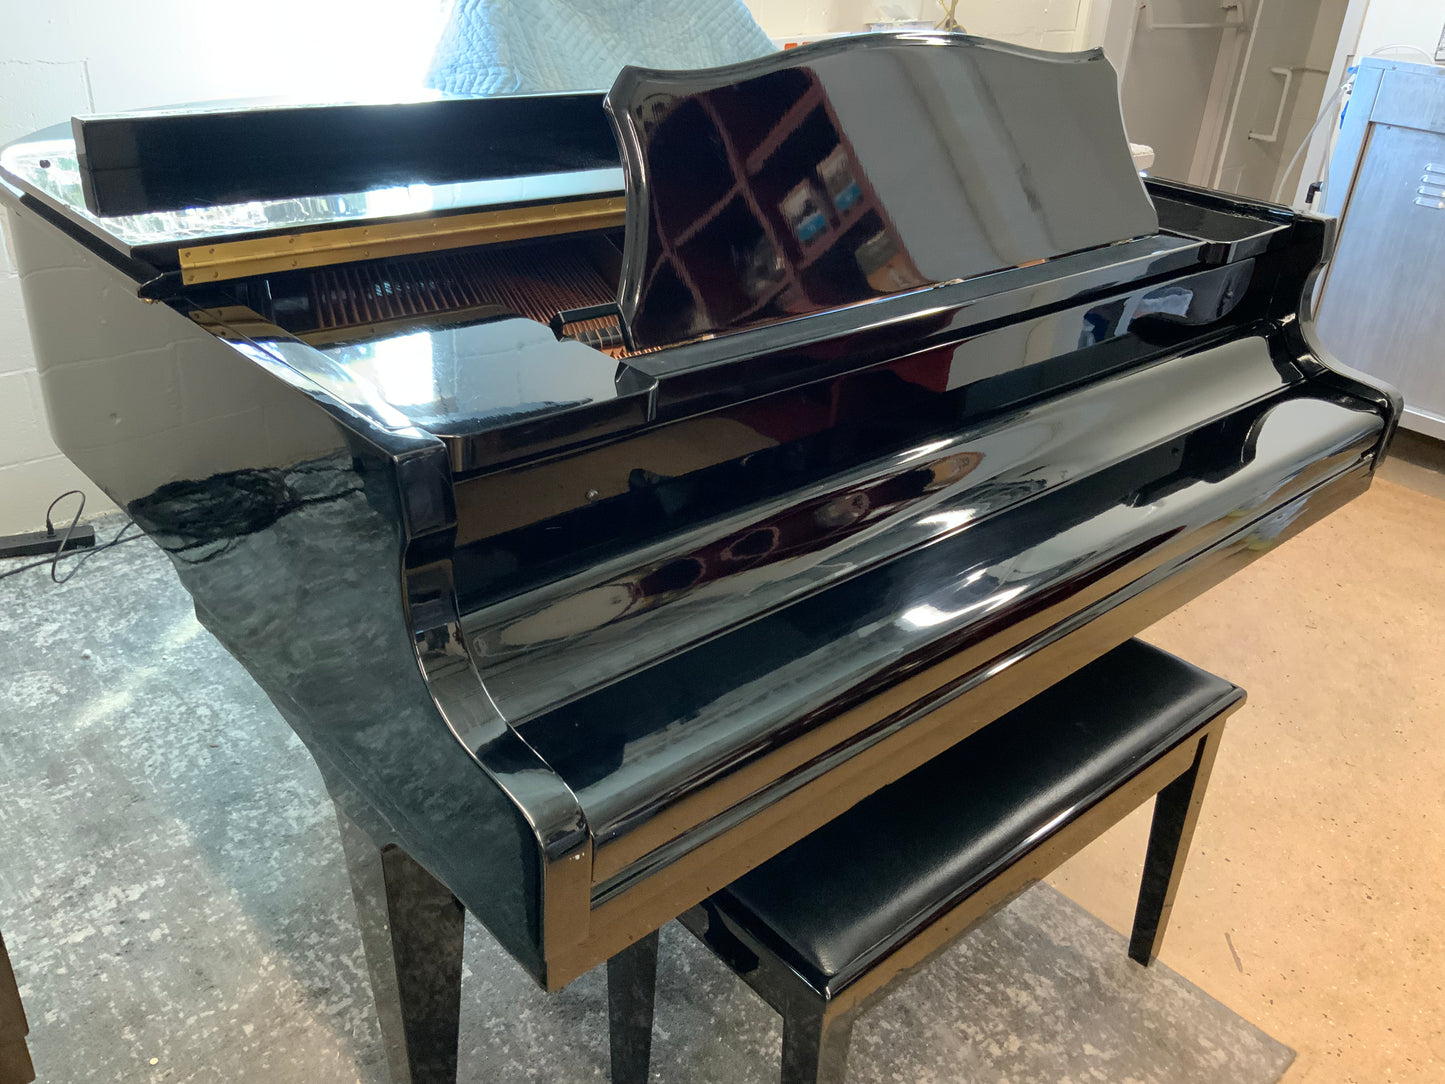 Otto Altenburg OA-047 Grand Piano